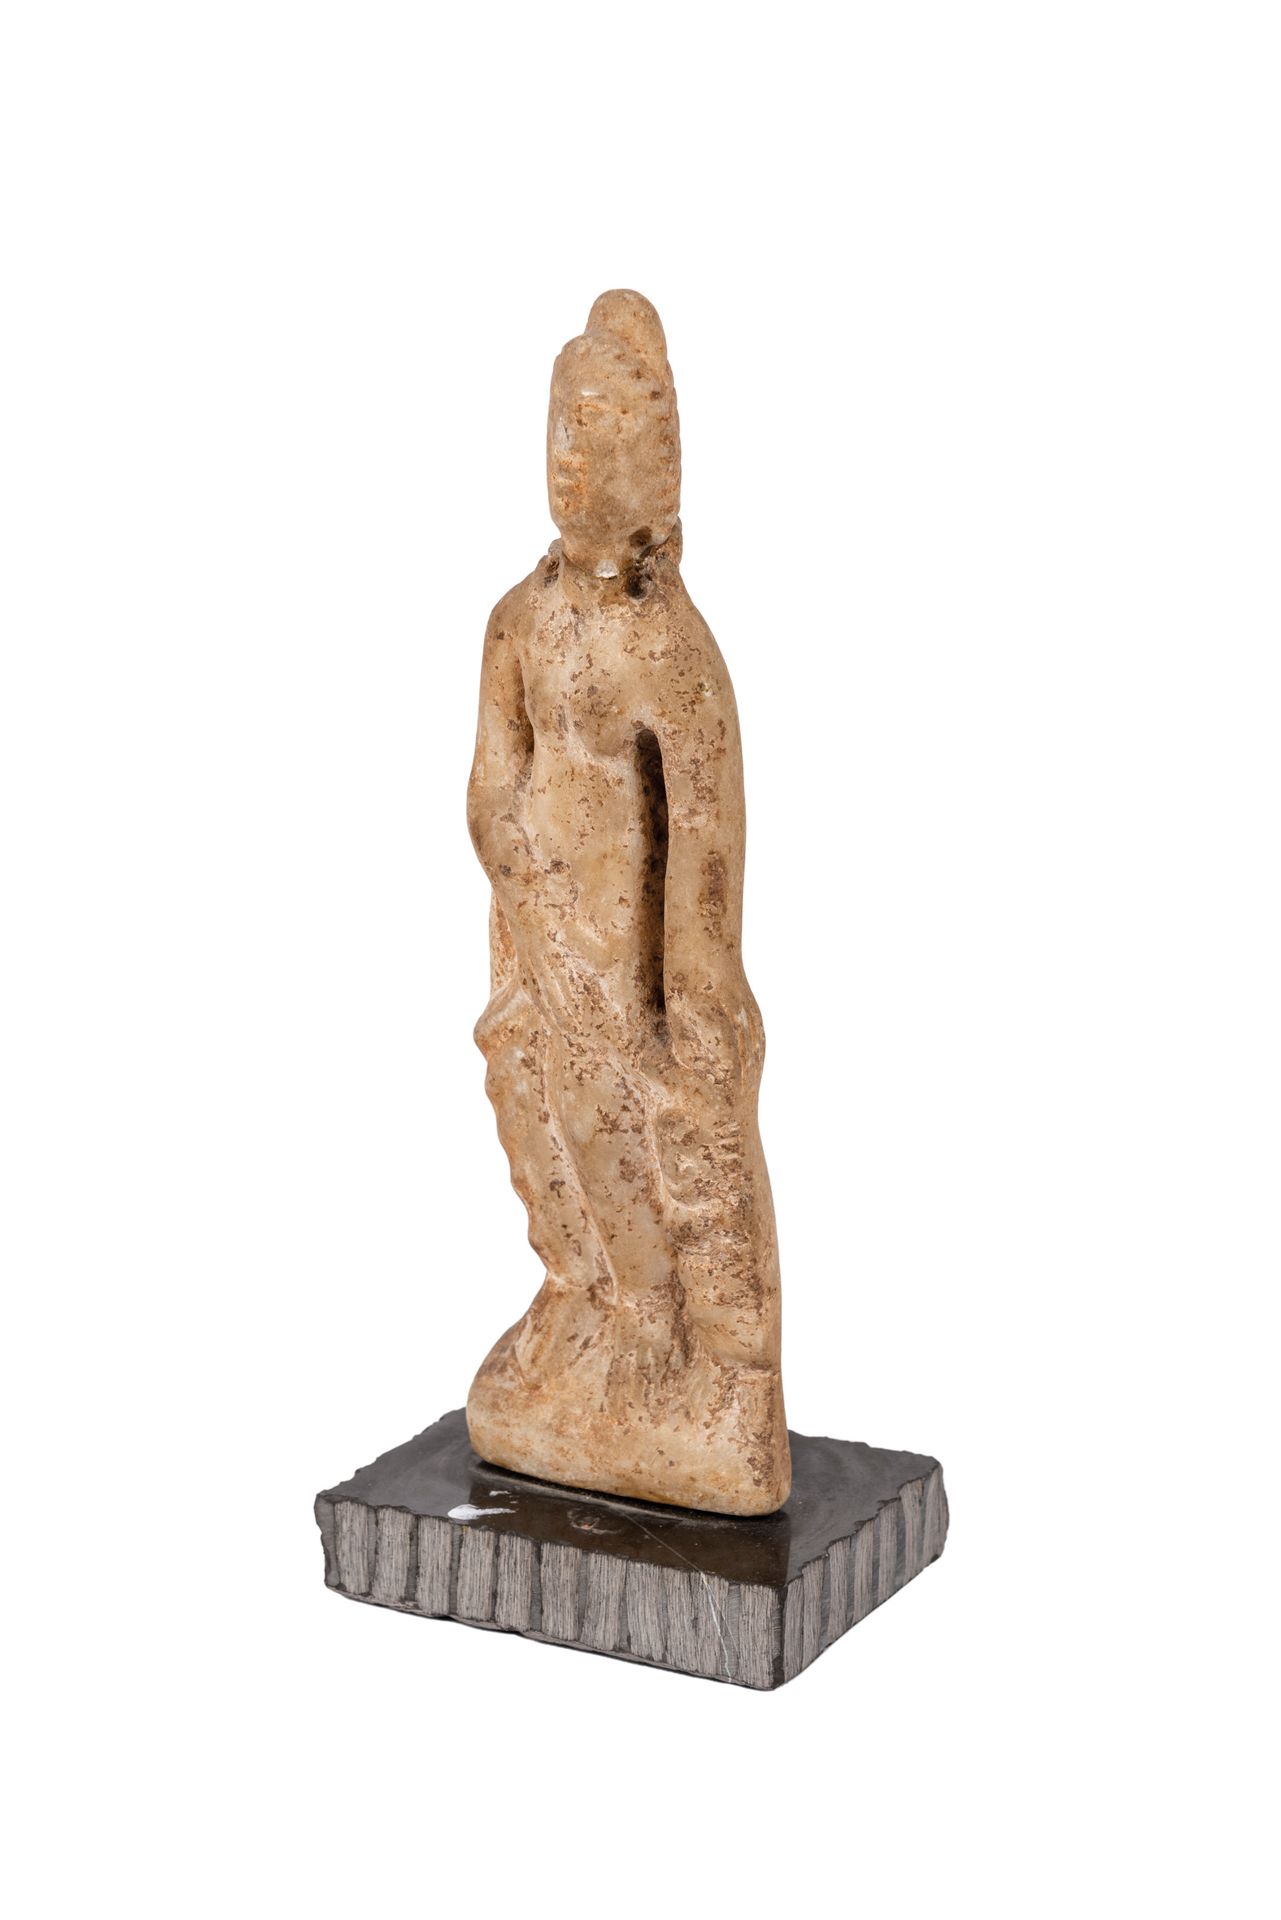 Null 描绘维纳斯与爱神的石膏雕塑。罗马。公元1-3世纪。 颈部区域有破损。

出处：私人收藏，摩纳哥。